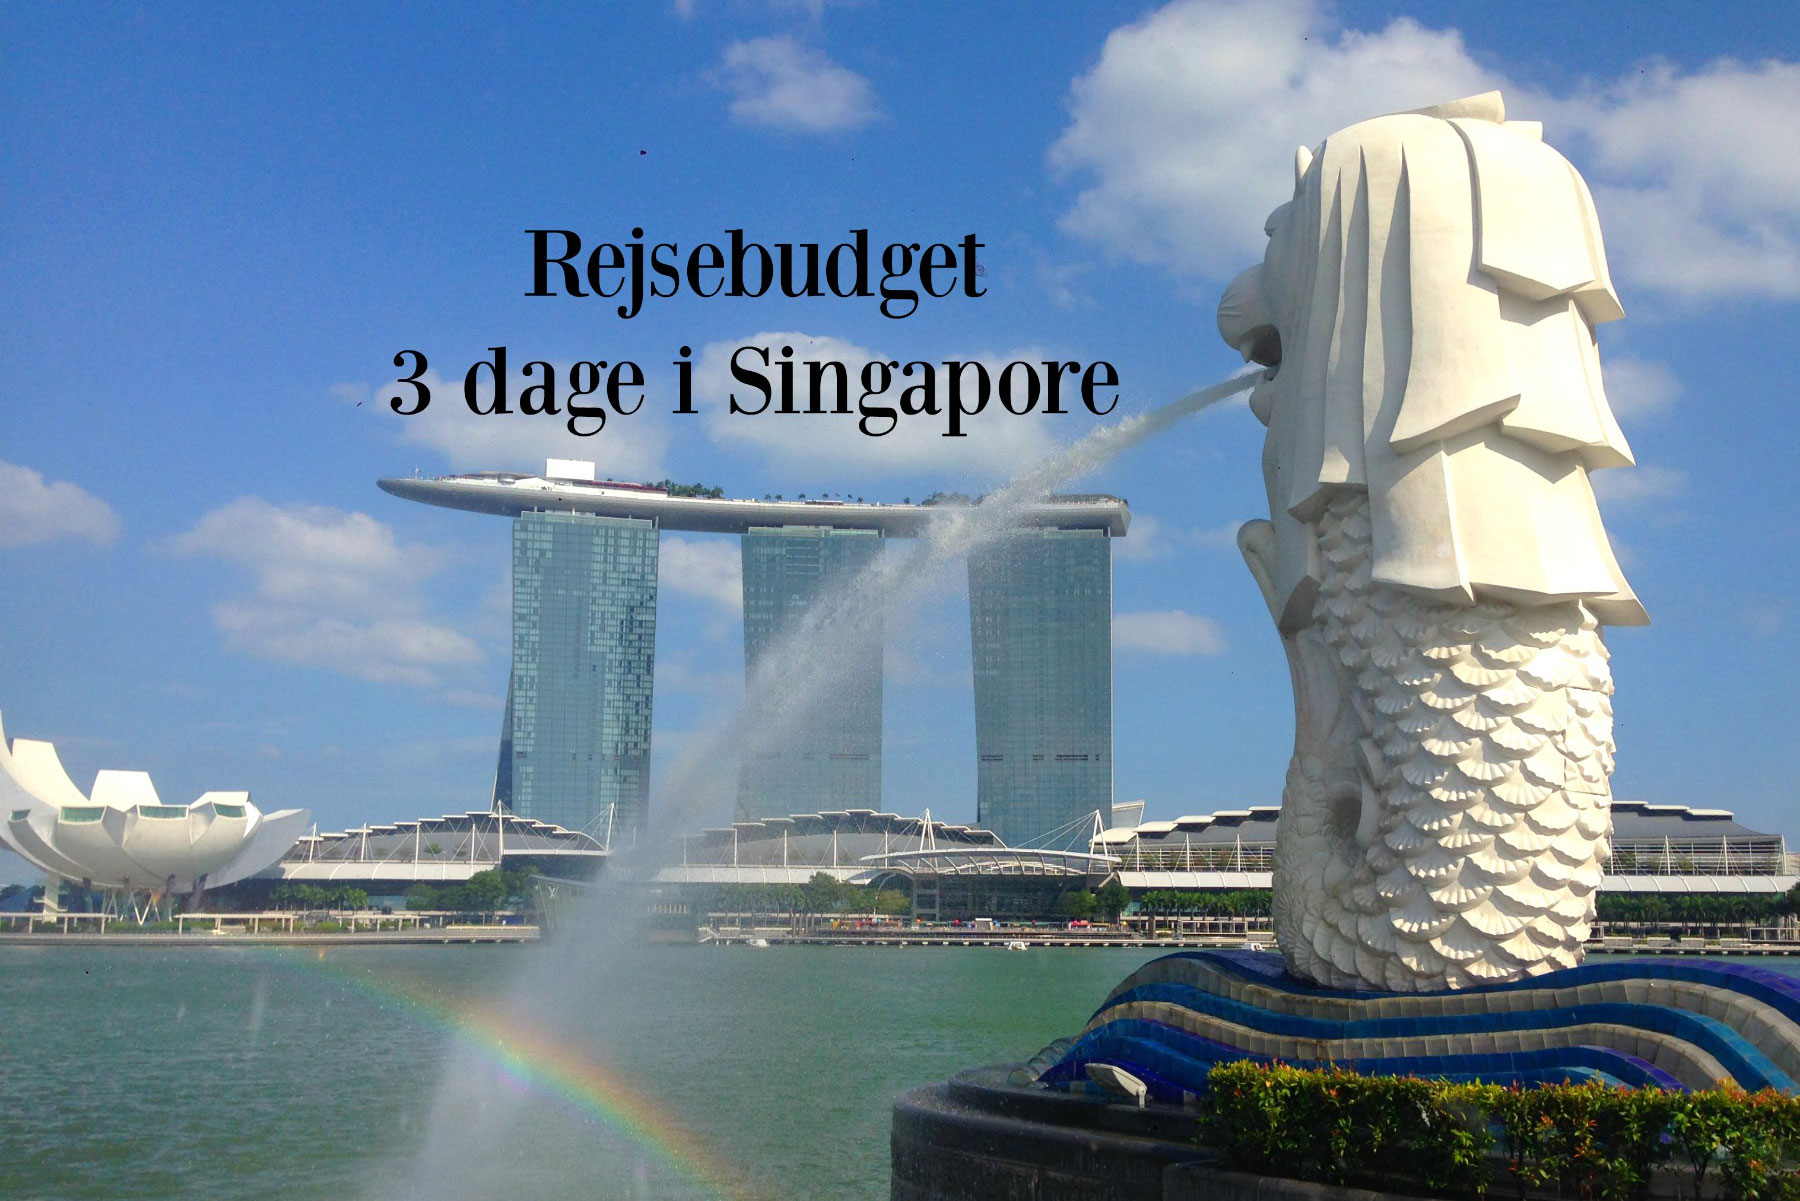 Billigt rejsebudget til en storbyferie i Singapore